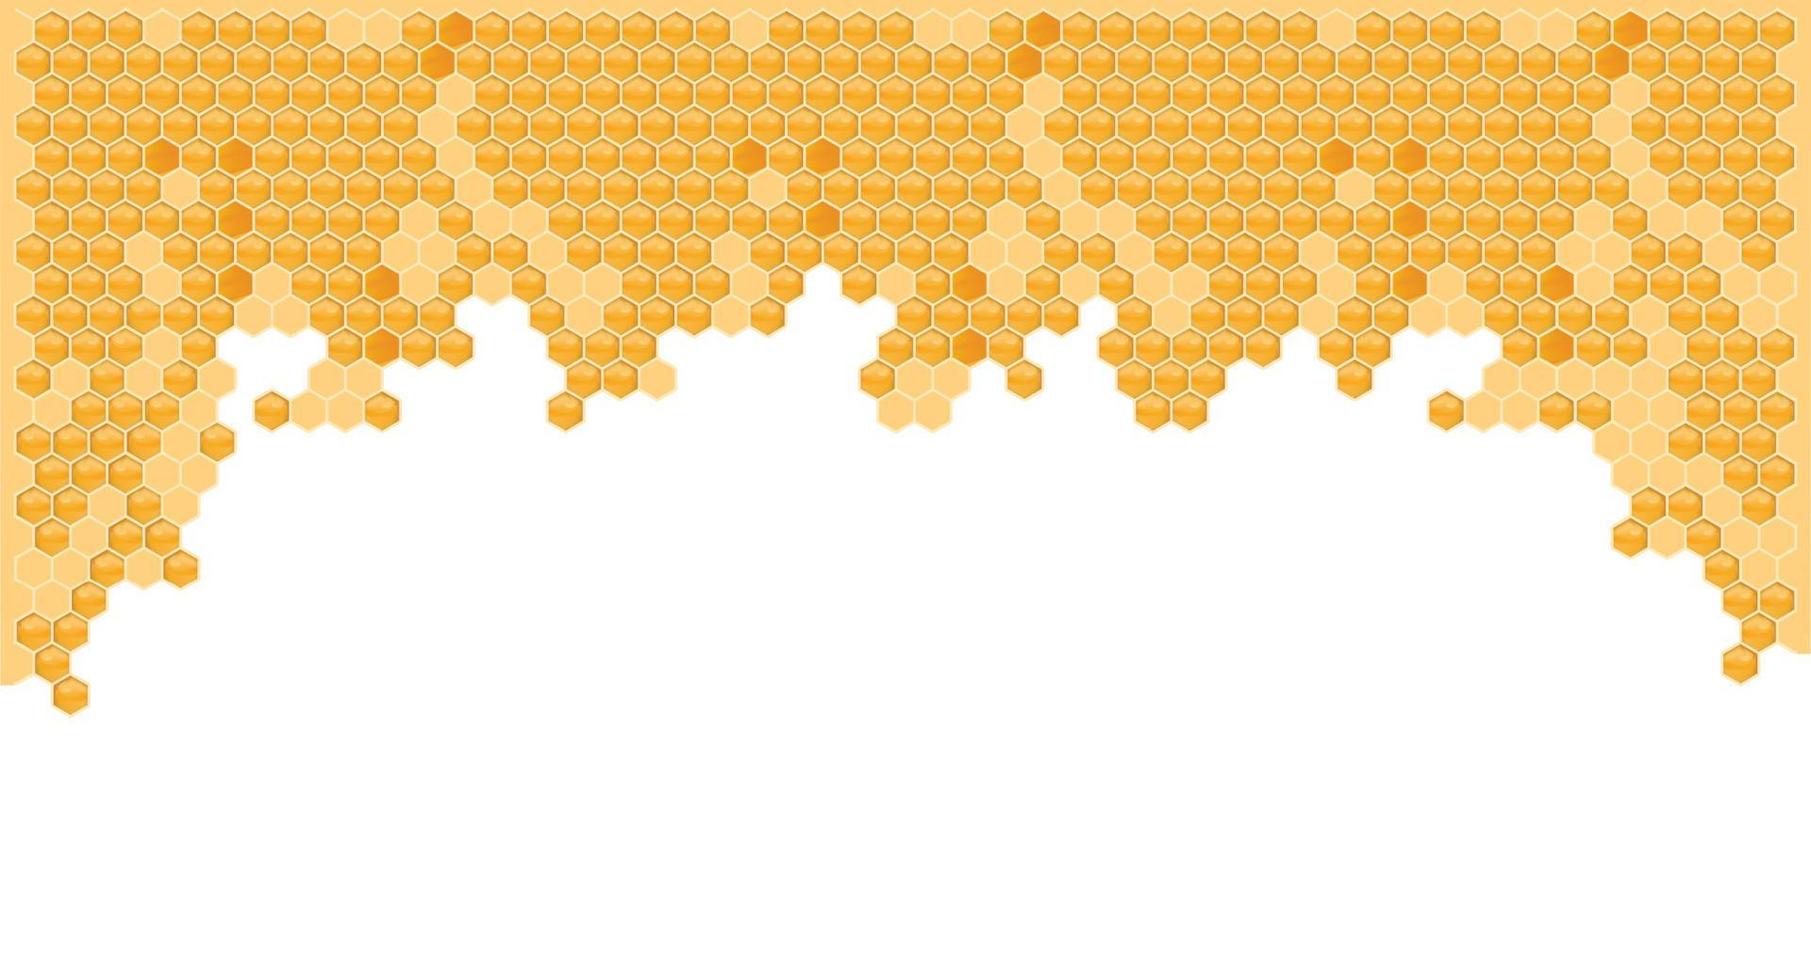 gelb-orangeer wabenhintergrund. Bienenstock mit sechseckigen Gitterzellen. geometrische nahtlose Textur. realistische 3D-Vektorillustration. vektor